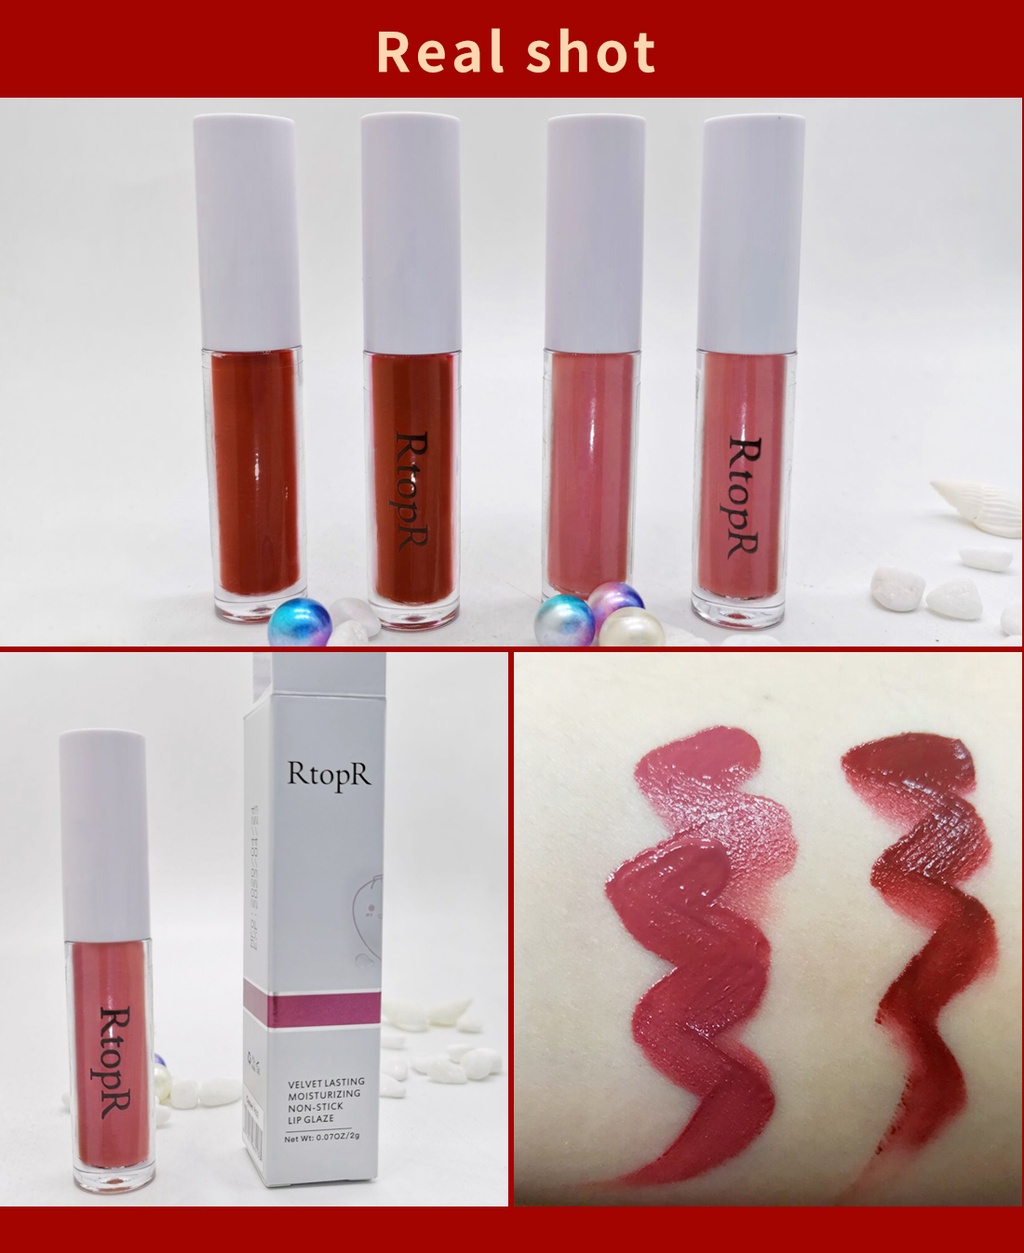 รูปภาพเพิ่มเติมเกี่ยวกับ RtopR FDA เครื่องสําอางลิปสติก ลิปกลอส ให้ความชุ่มชื้น กันน้ําติดทนนาน เครื่องสำอาง, ลิป, Velvet Lasting Moisturizing Non-stick Lip R01